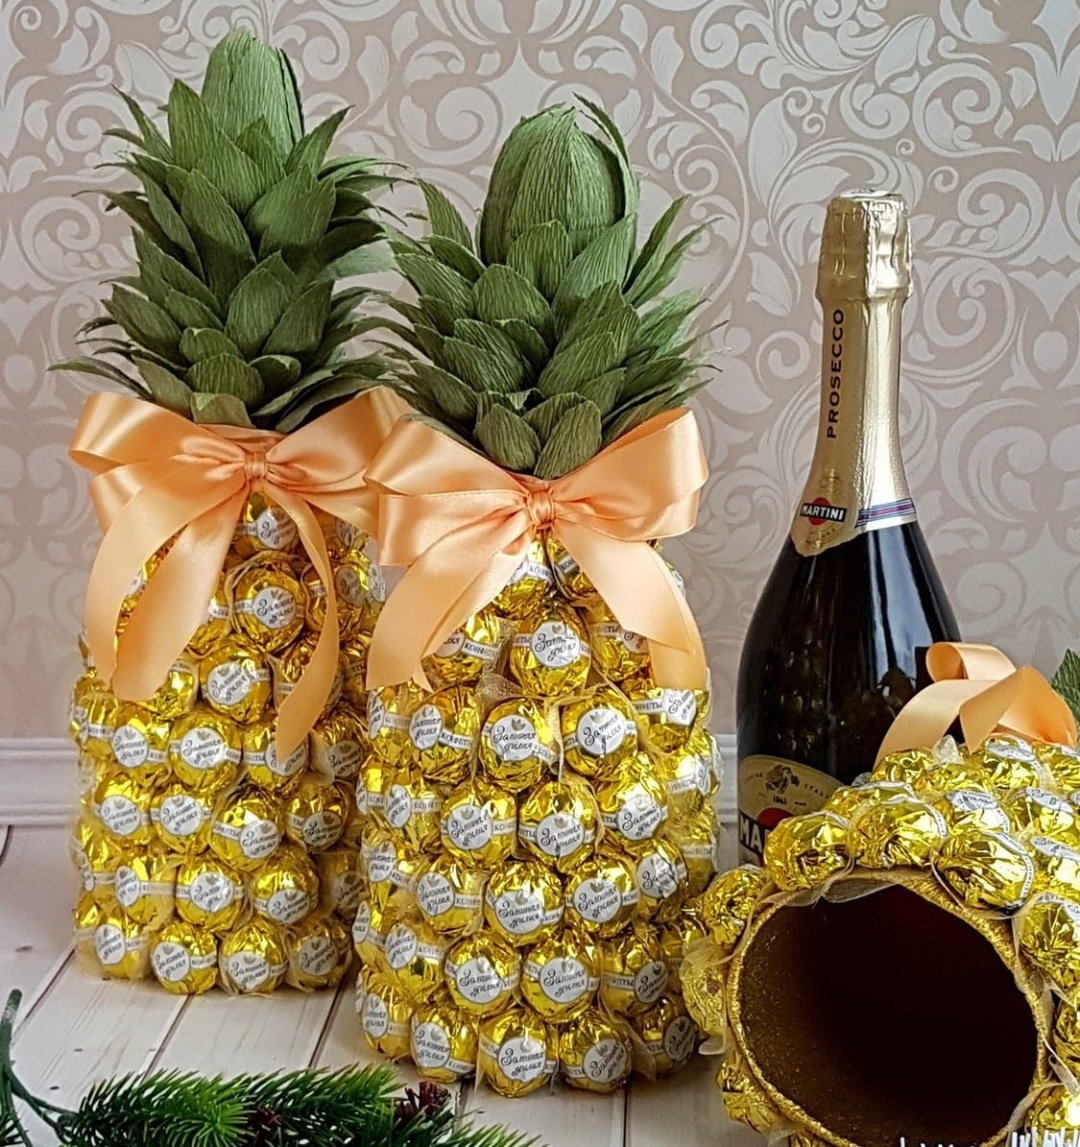 МК: упаковка для шампанского в виде ананаса из конфет